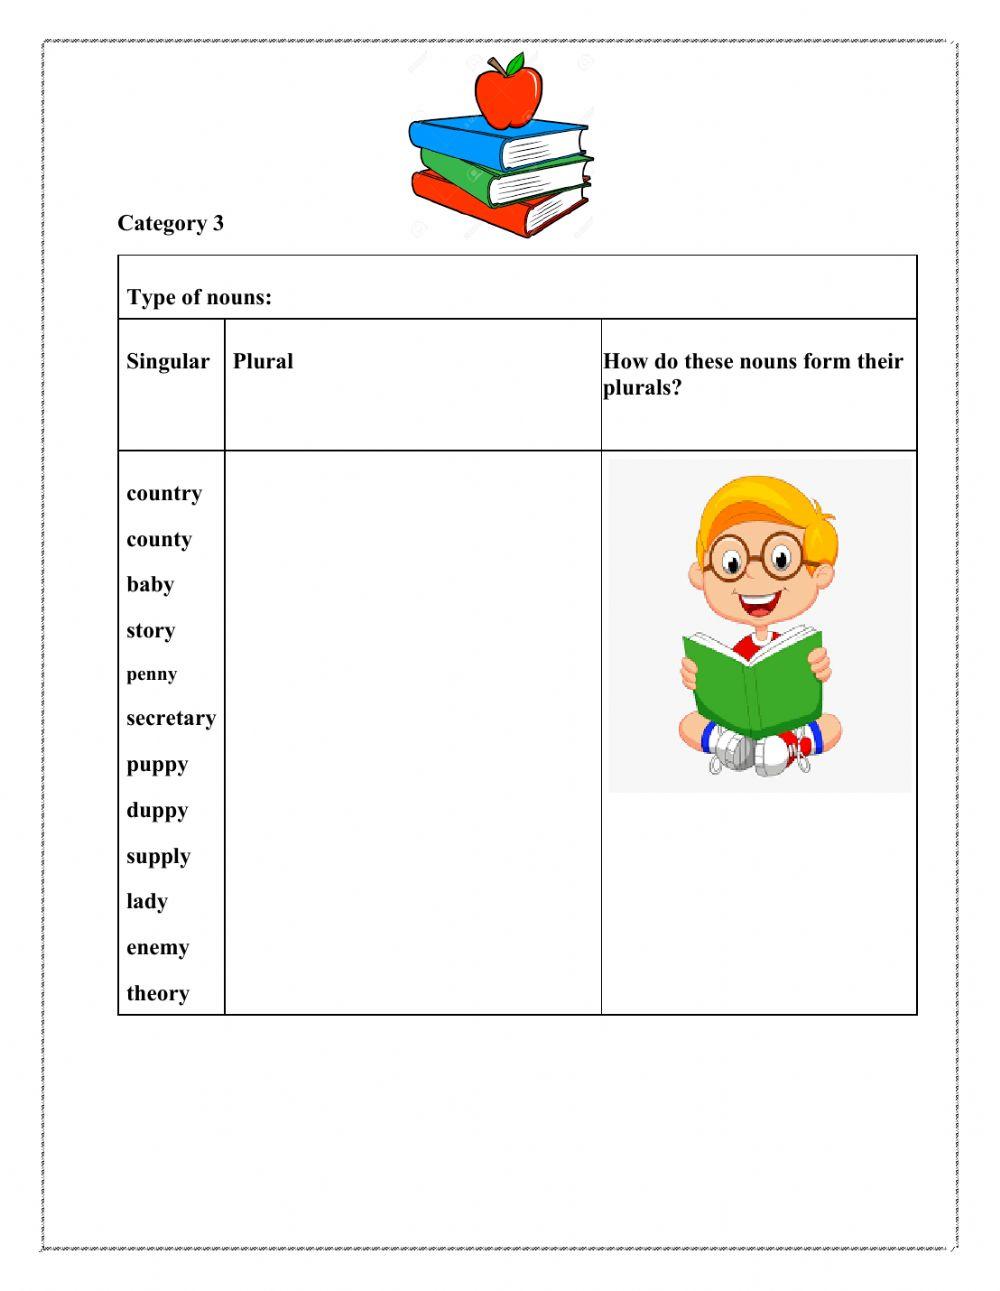 Singular and plural noun worksheet